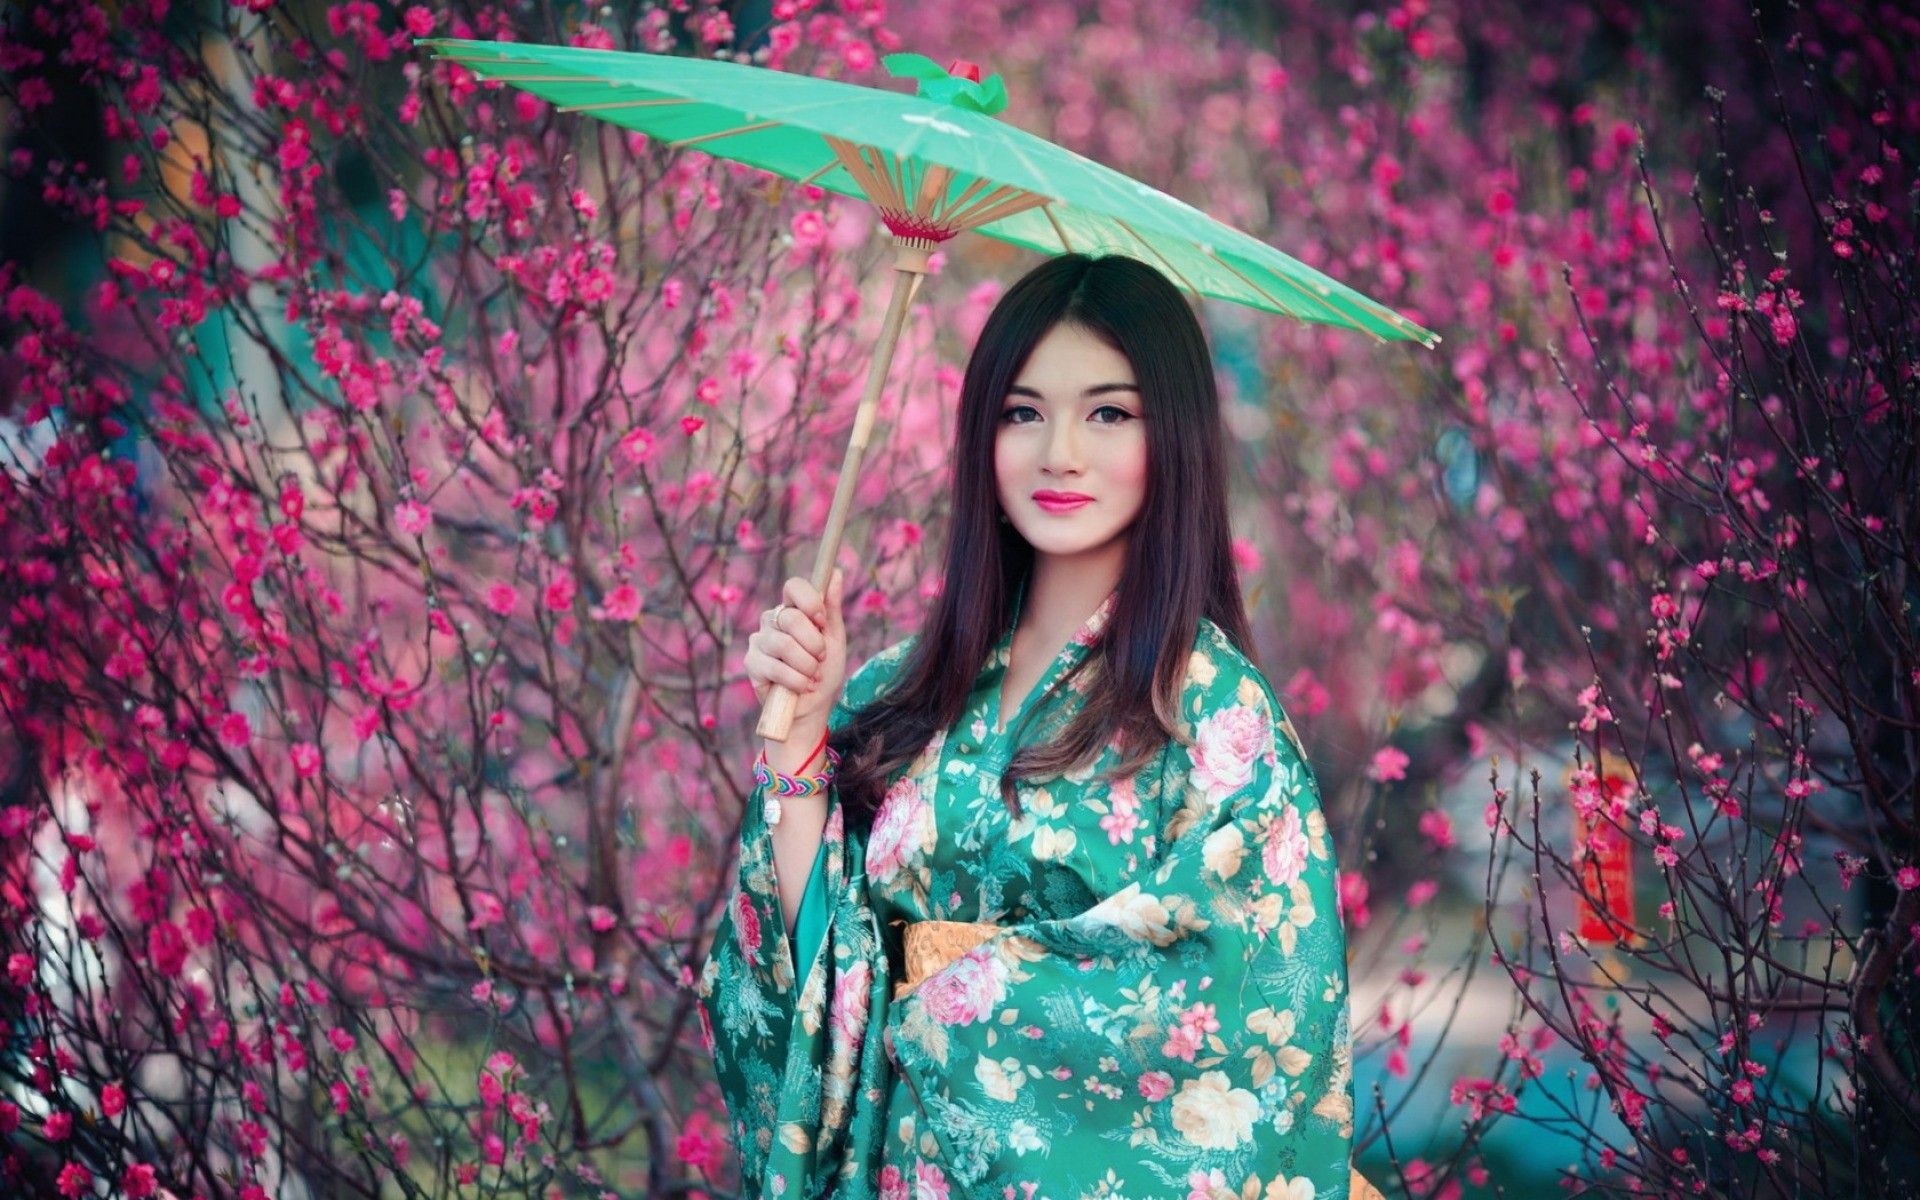 Kimono girl, Graceful poses, Chic fashion, Artistic backdrops, 1920x1200 HD Desktop